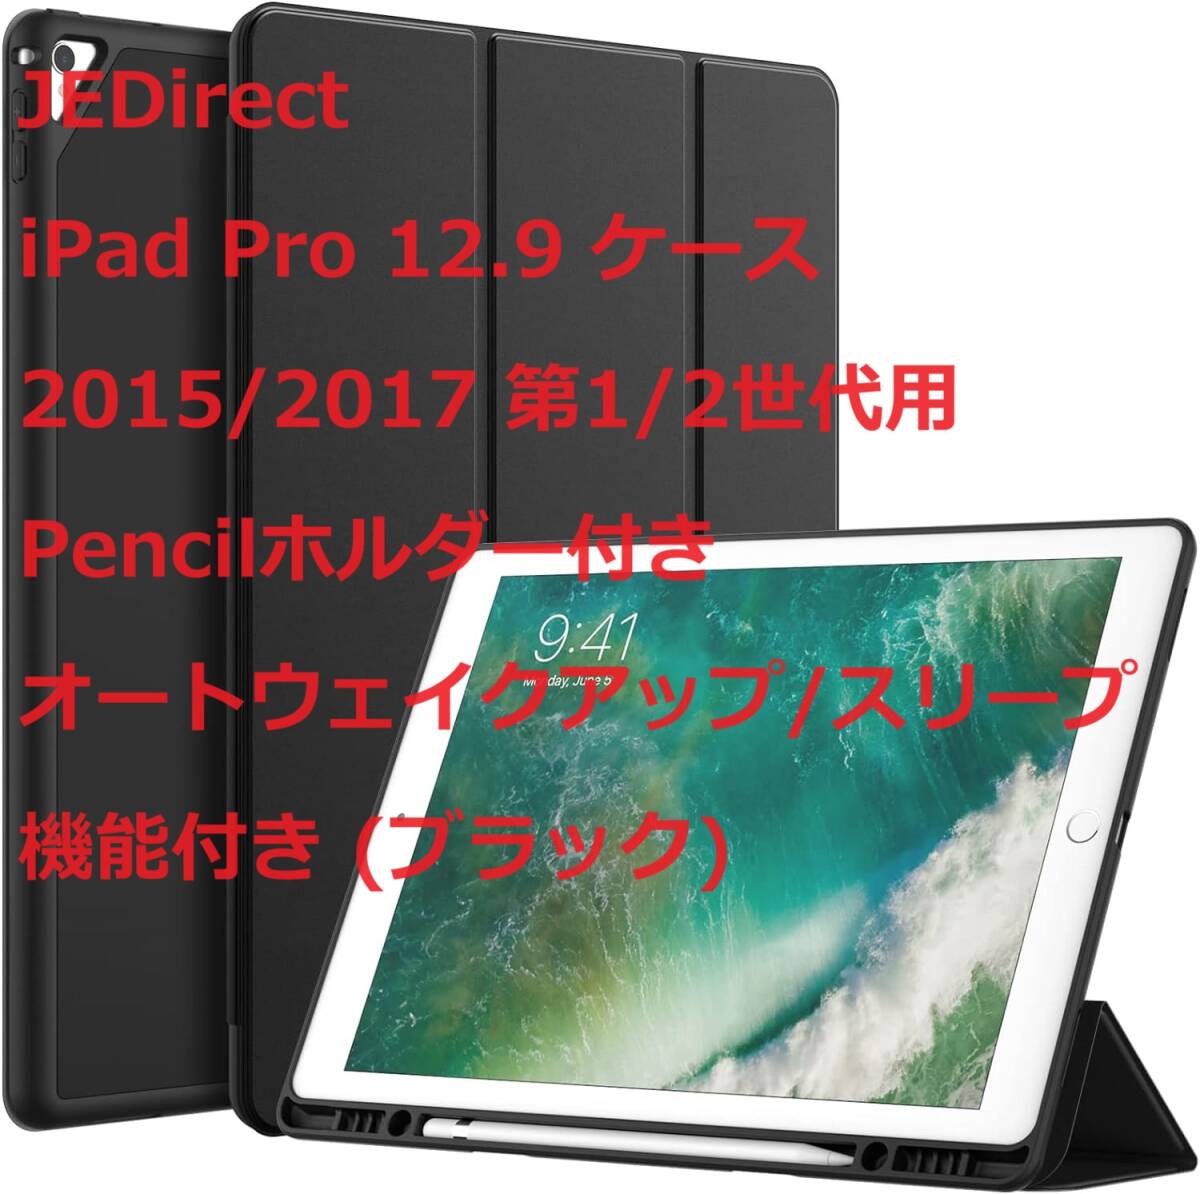 JEDirect iPad Pro 12.9 ケース 2015/2017 第1/2世代用Pencilホルダー付き オートウェイクアップ/スリープ機能付き (ブラック)_画像1